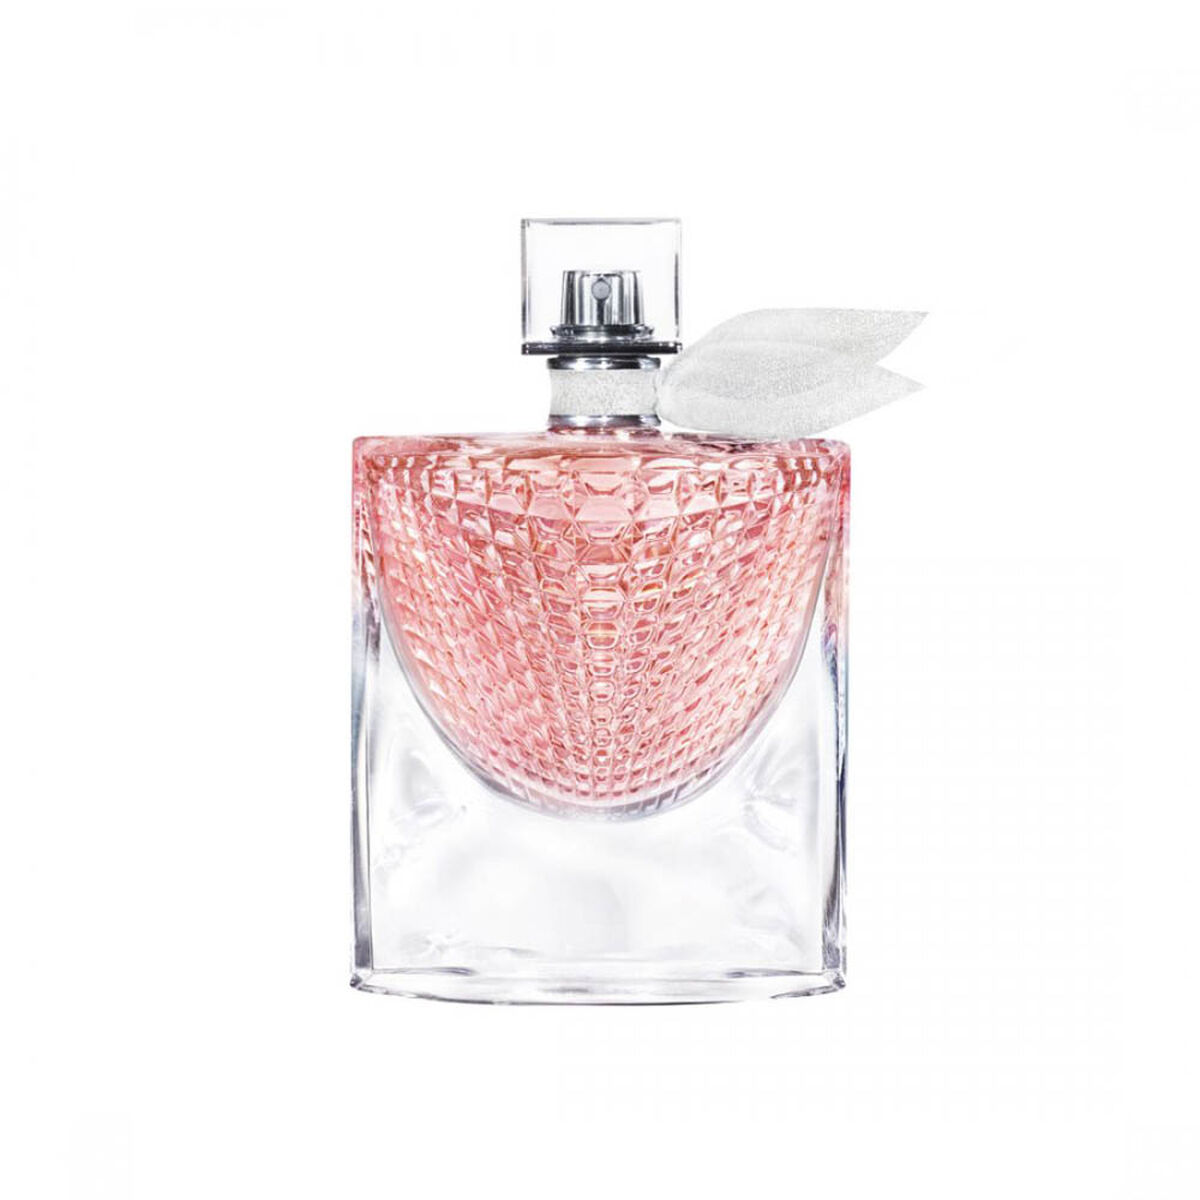 Perfume Lancome LVEB L'Éclat 50 ml